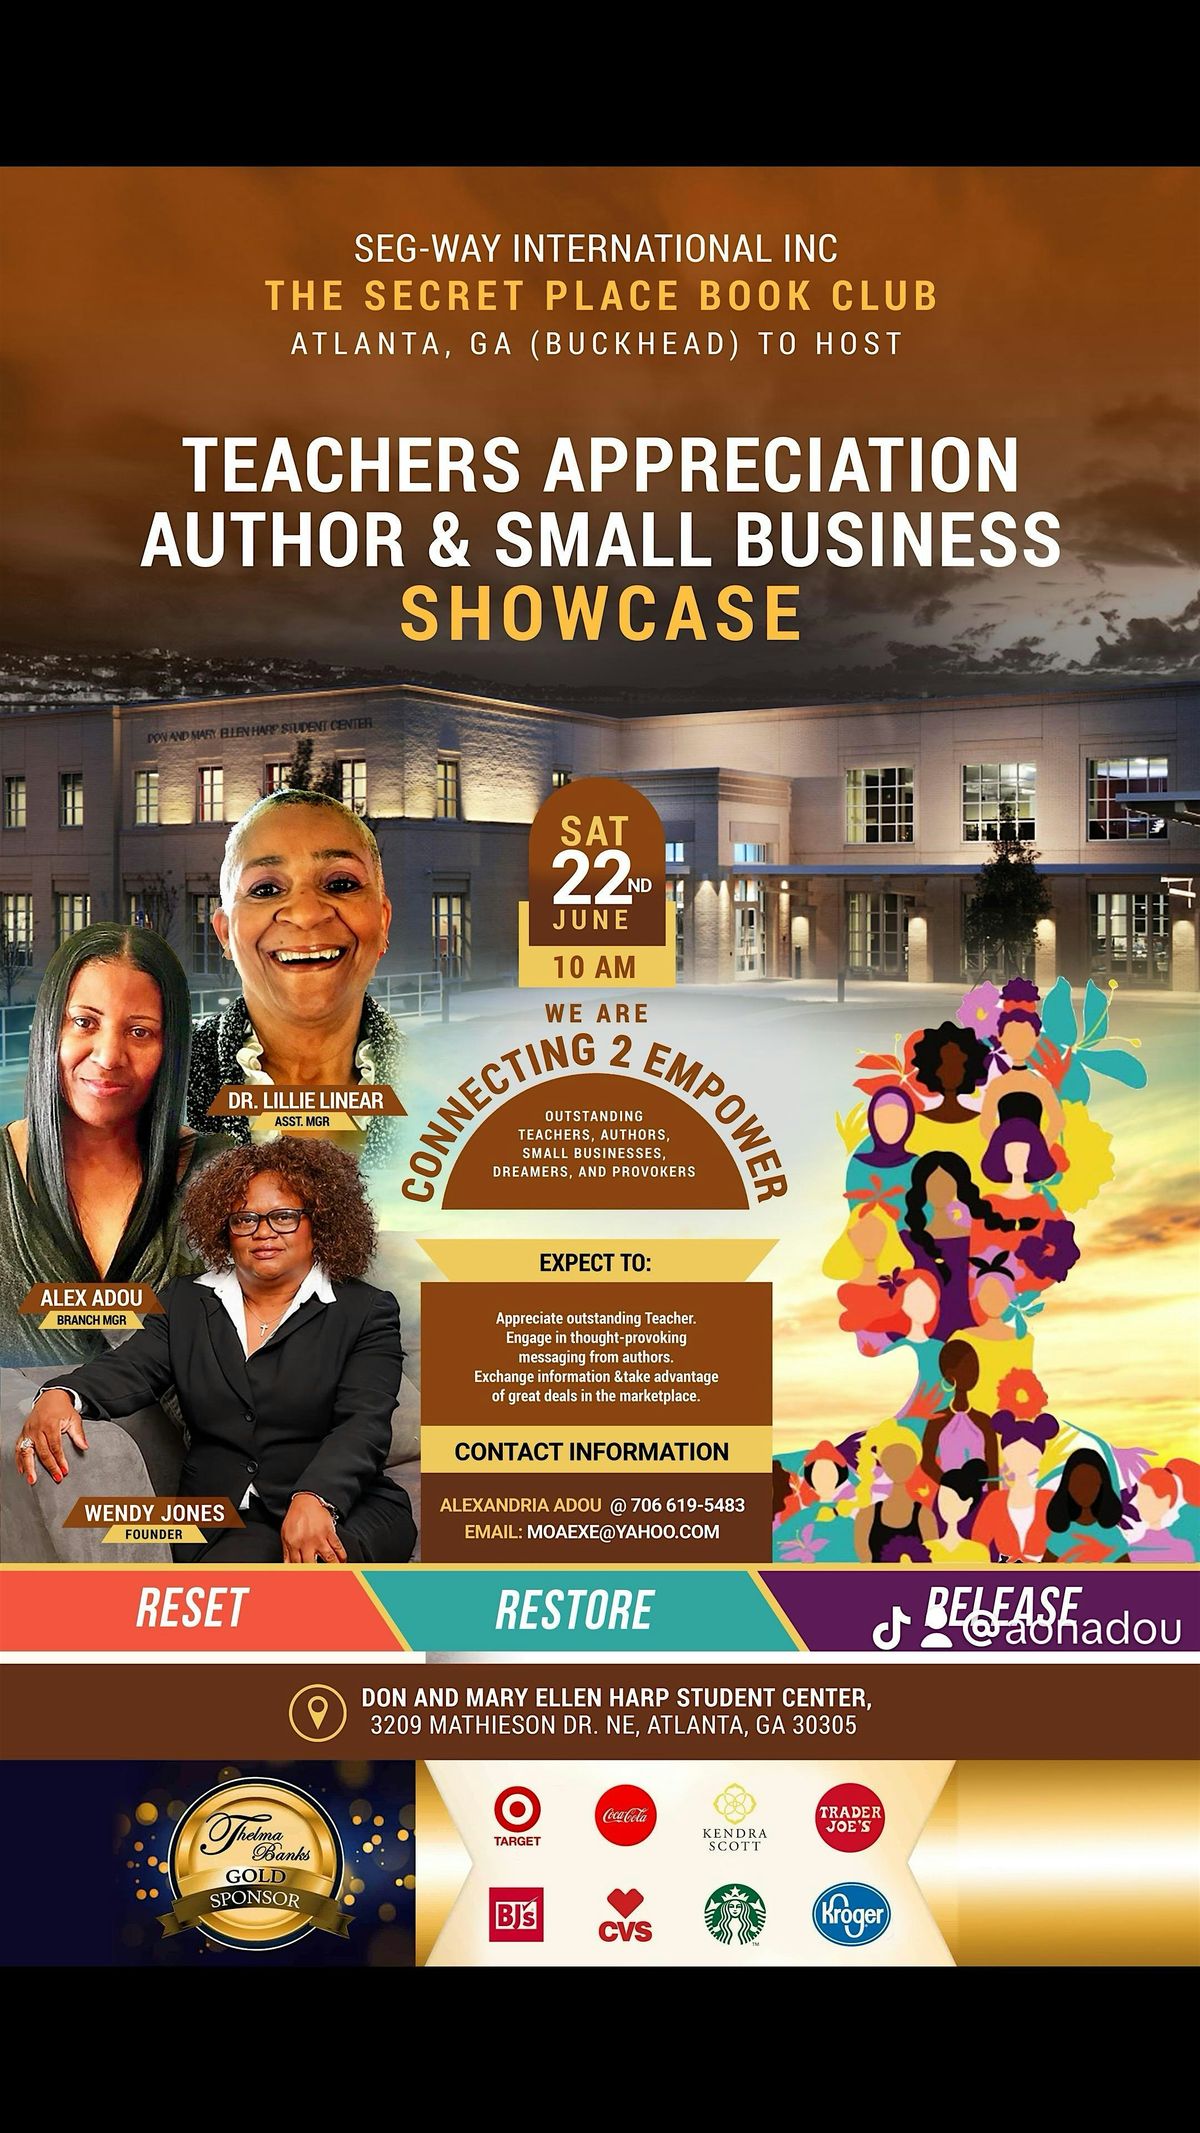 Teacher Appreciation Author & Small Business Showcase